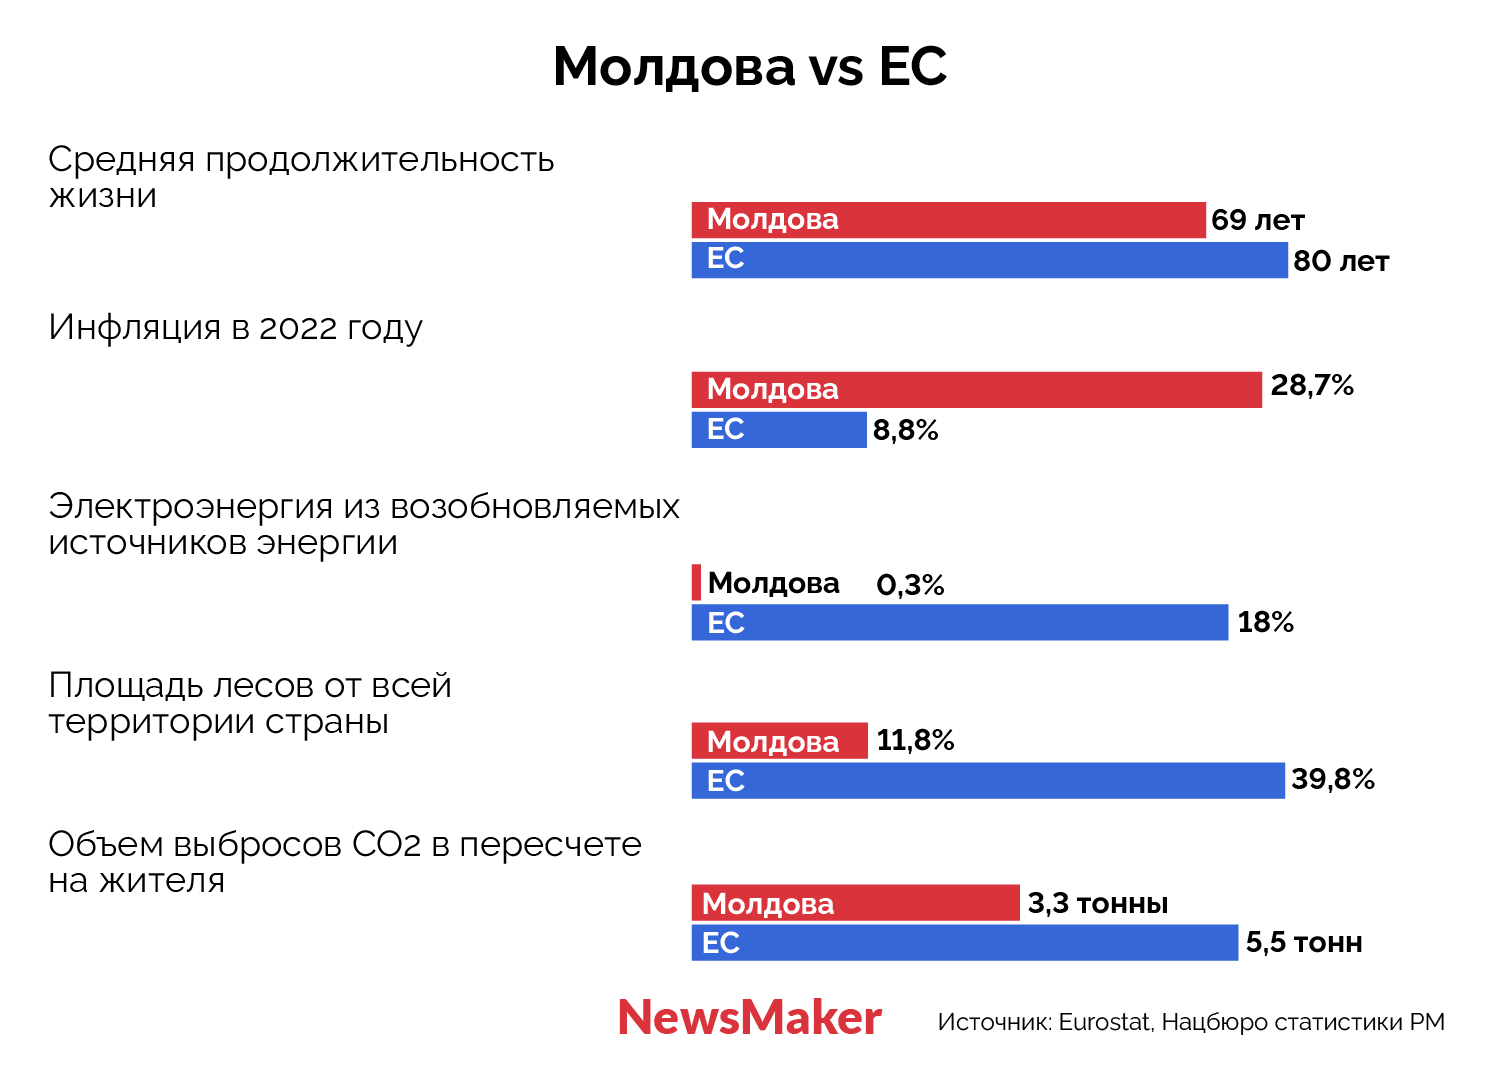 Что ждет экономику Молдовы в ЕС? Рассказываем на примере Румынии, Болгарии, Польши и Хорватии